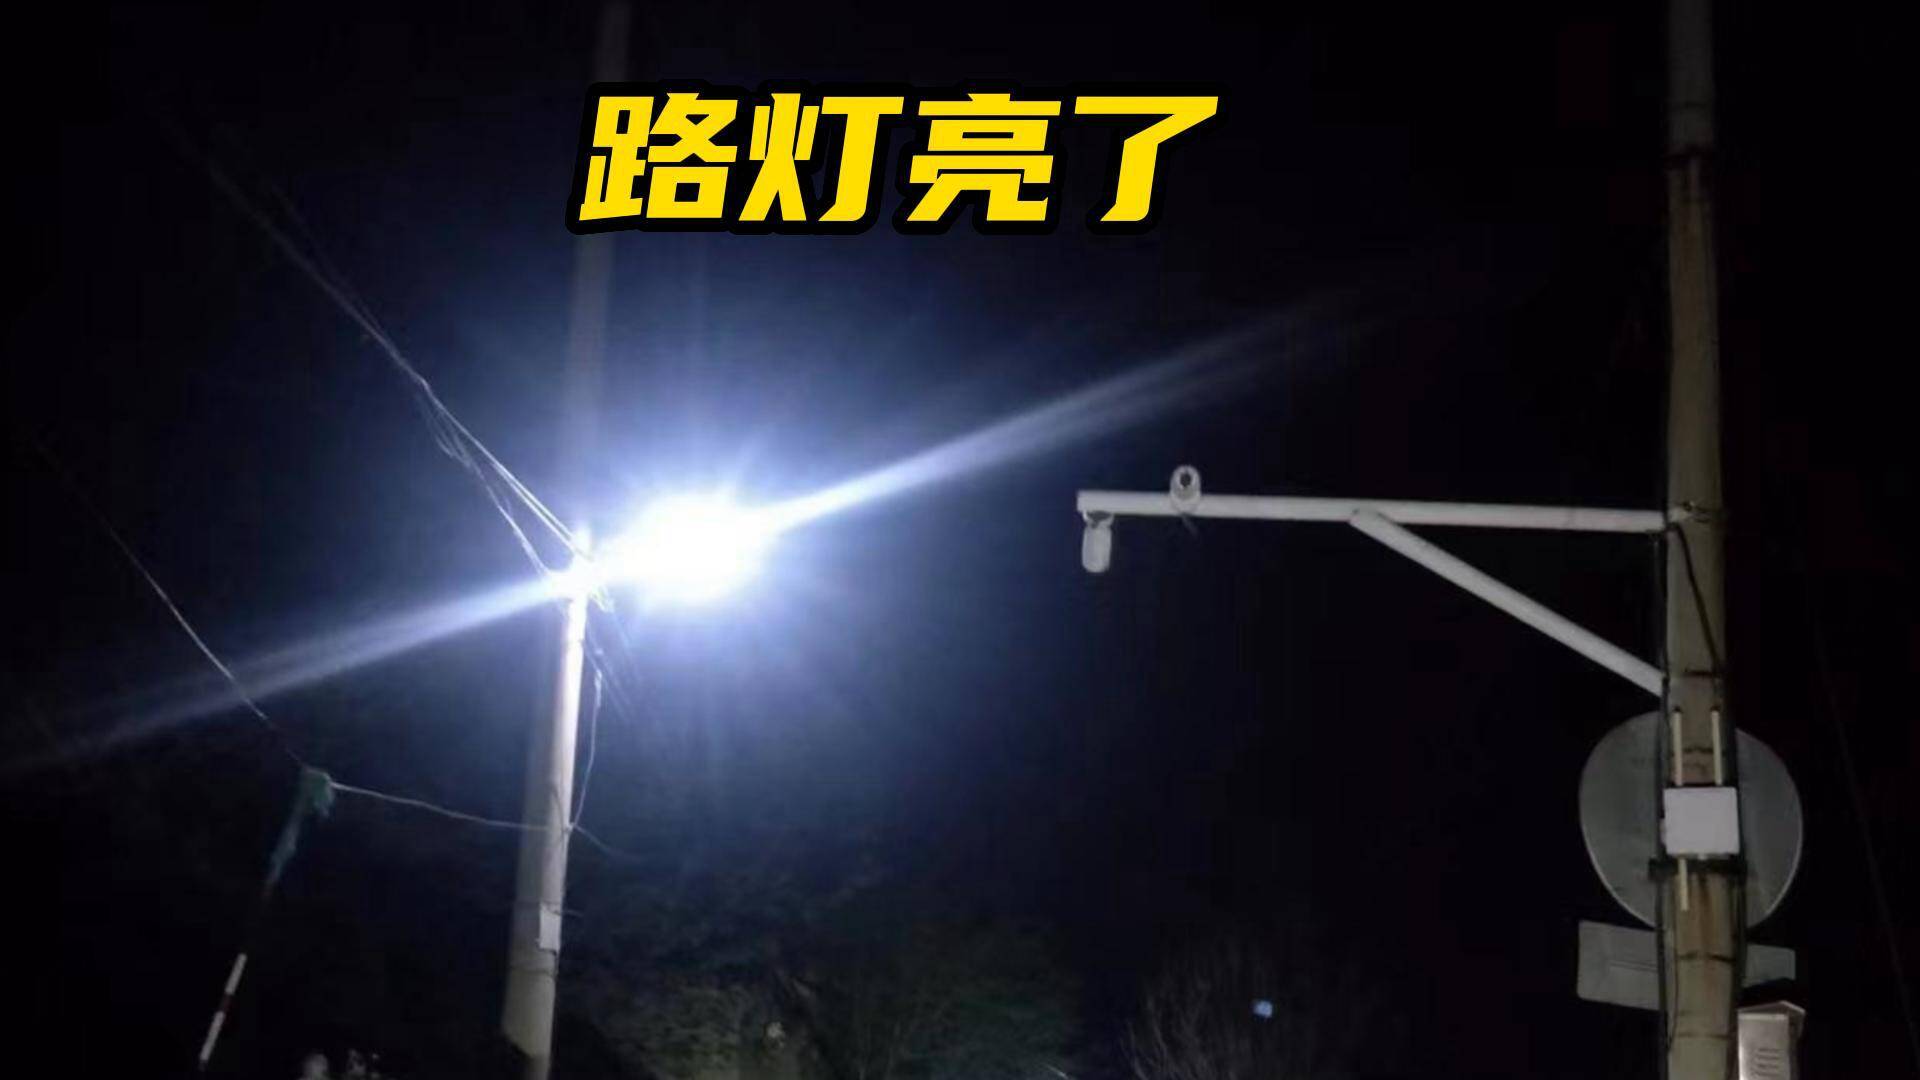 身边事 | 网友：留言后路灯恢复照明 走夜路也看得清了